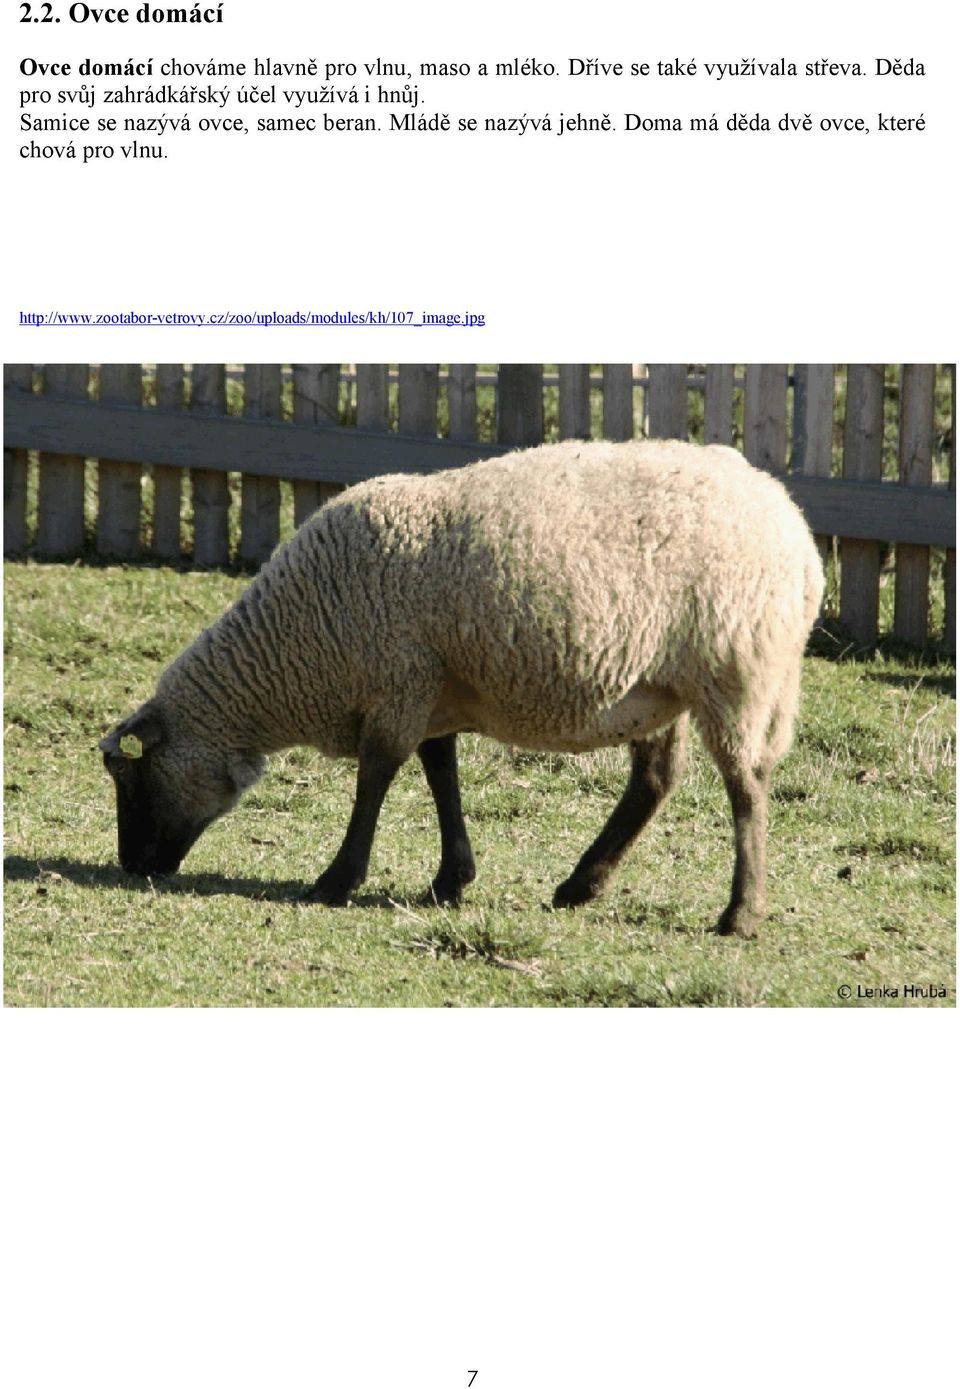 Samice se nazývá ovce, samec beran. Mládě se nazývá jehně.